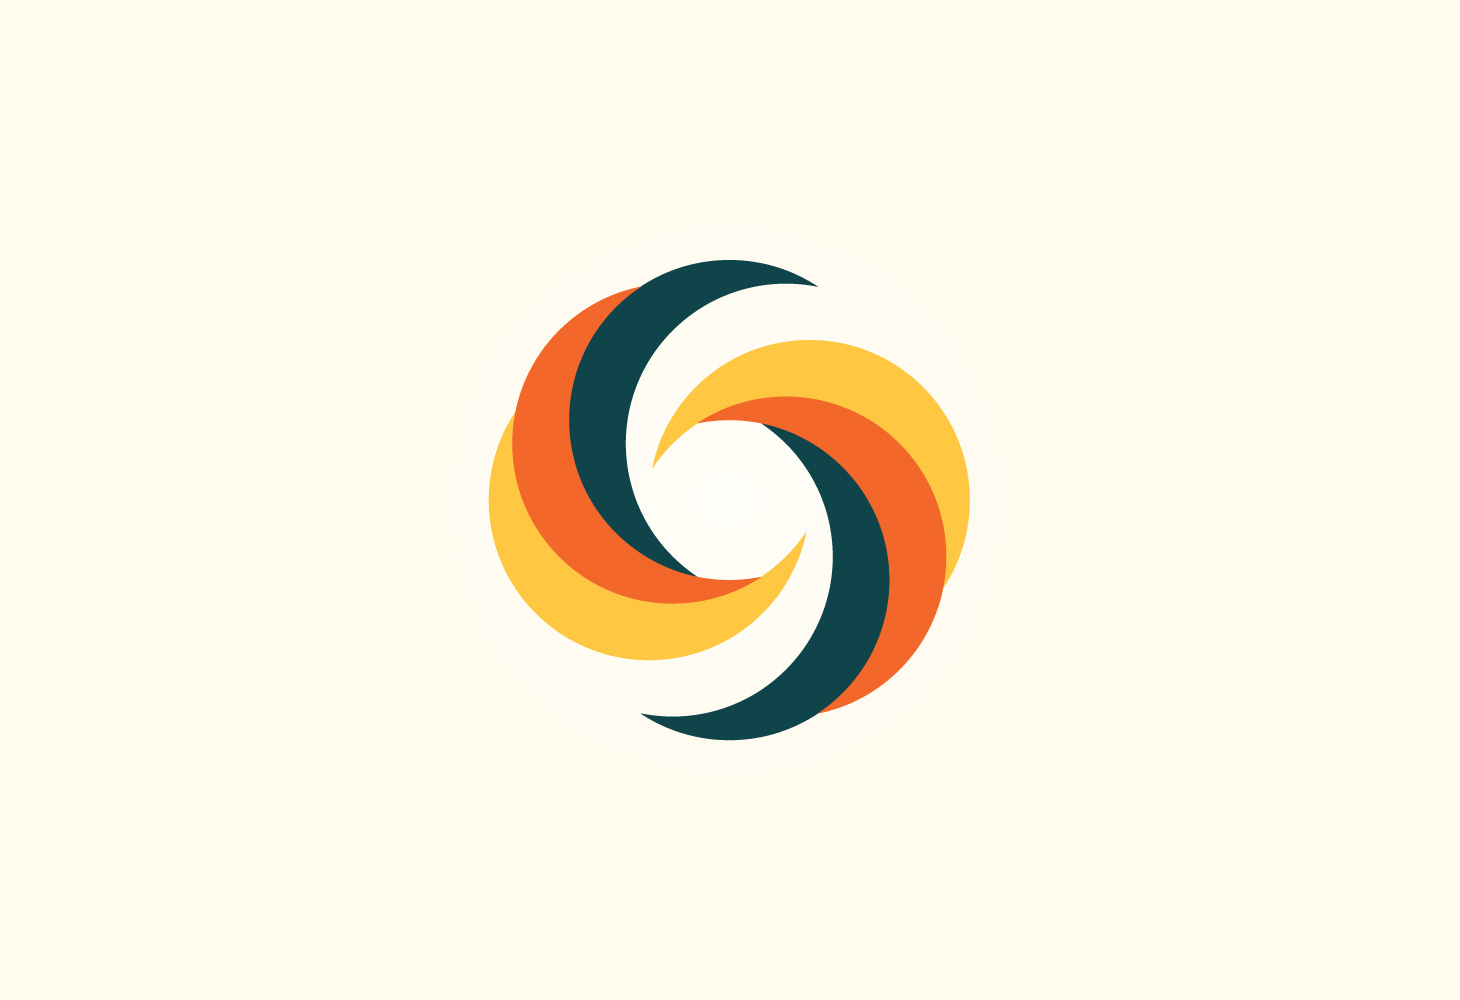 Bank of Sierra Leone - Branding - Logomark